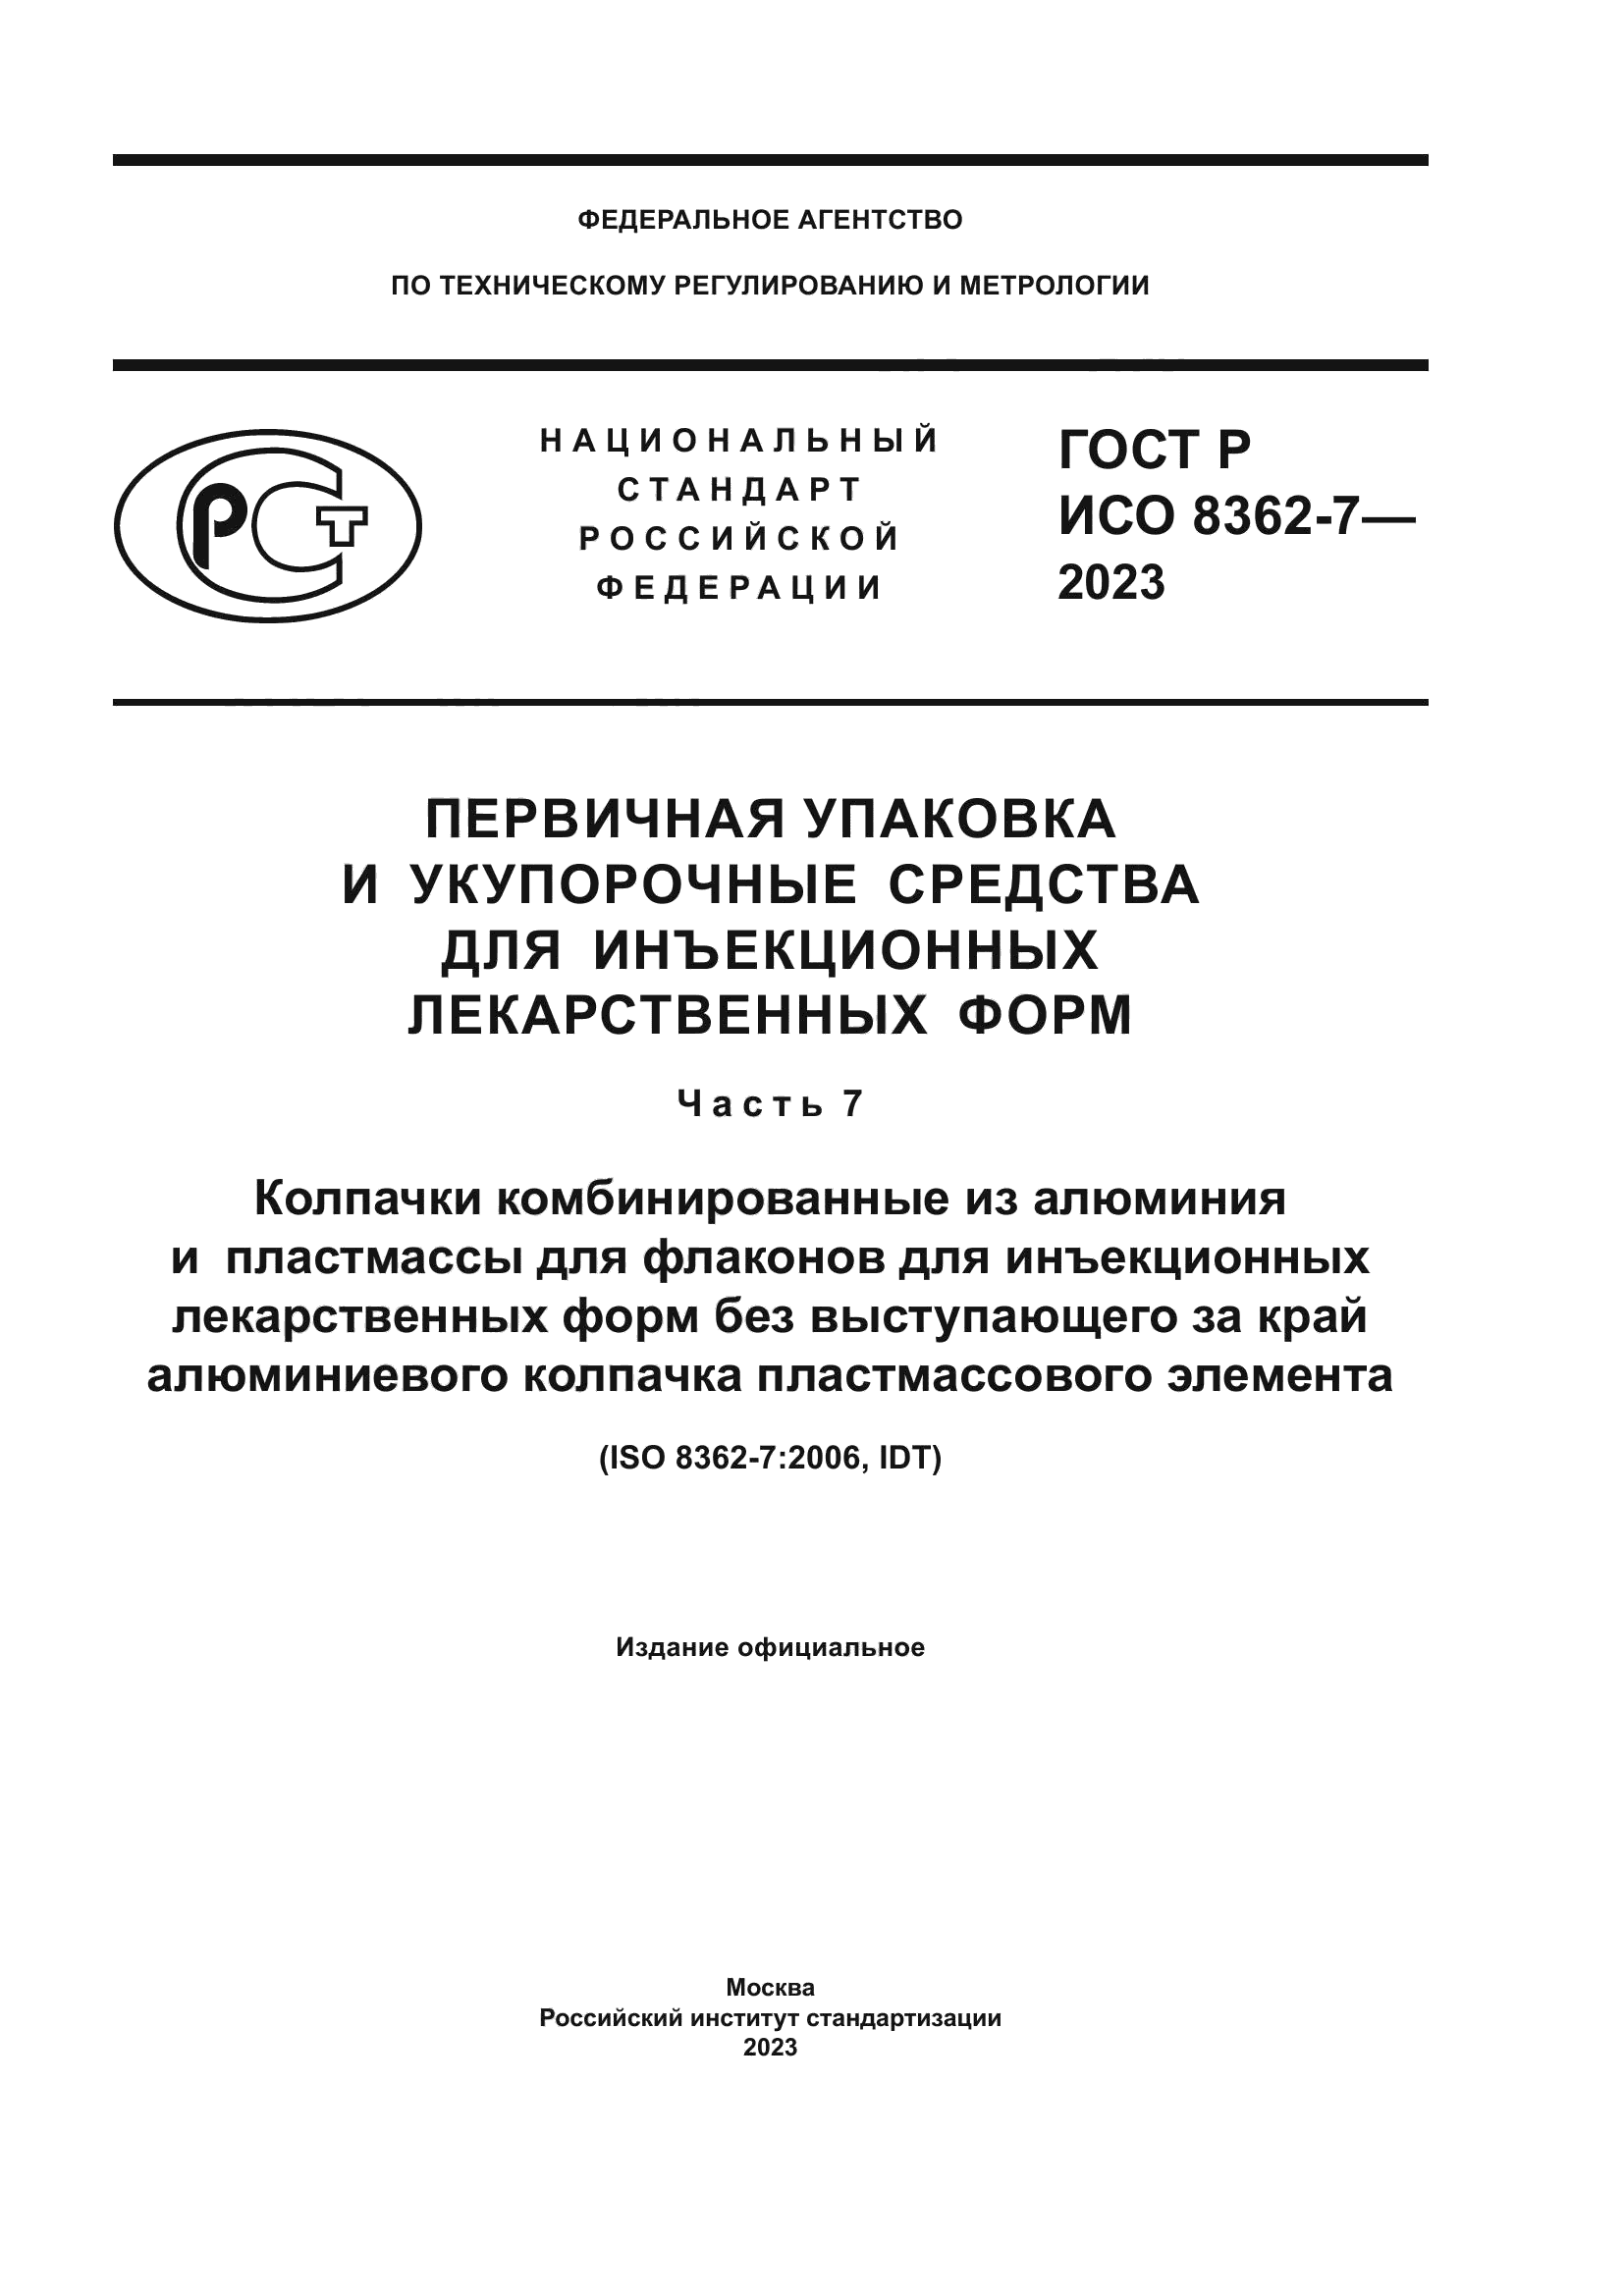 ГОСТ Р ИСО 8362-7-2023